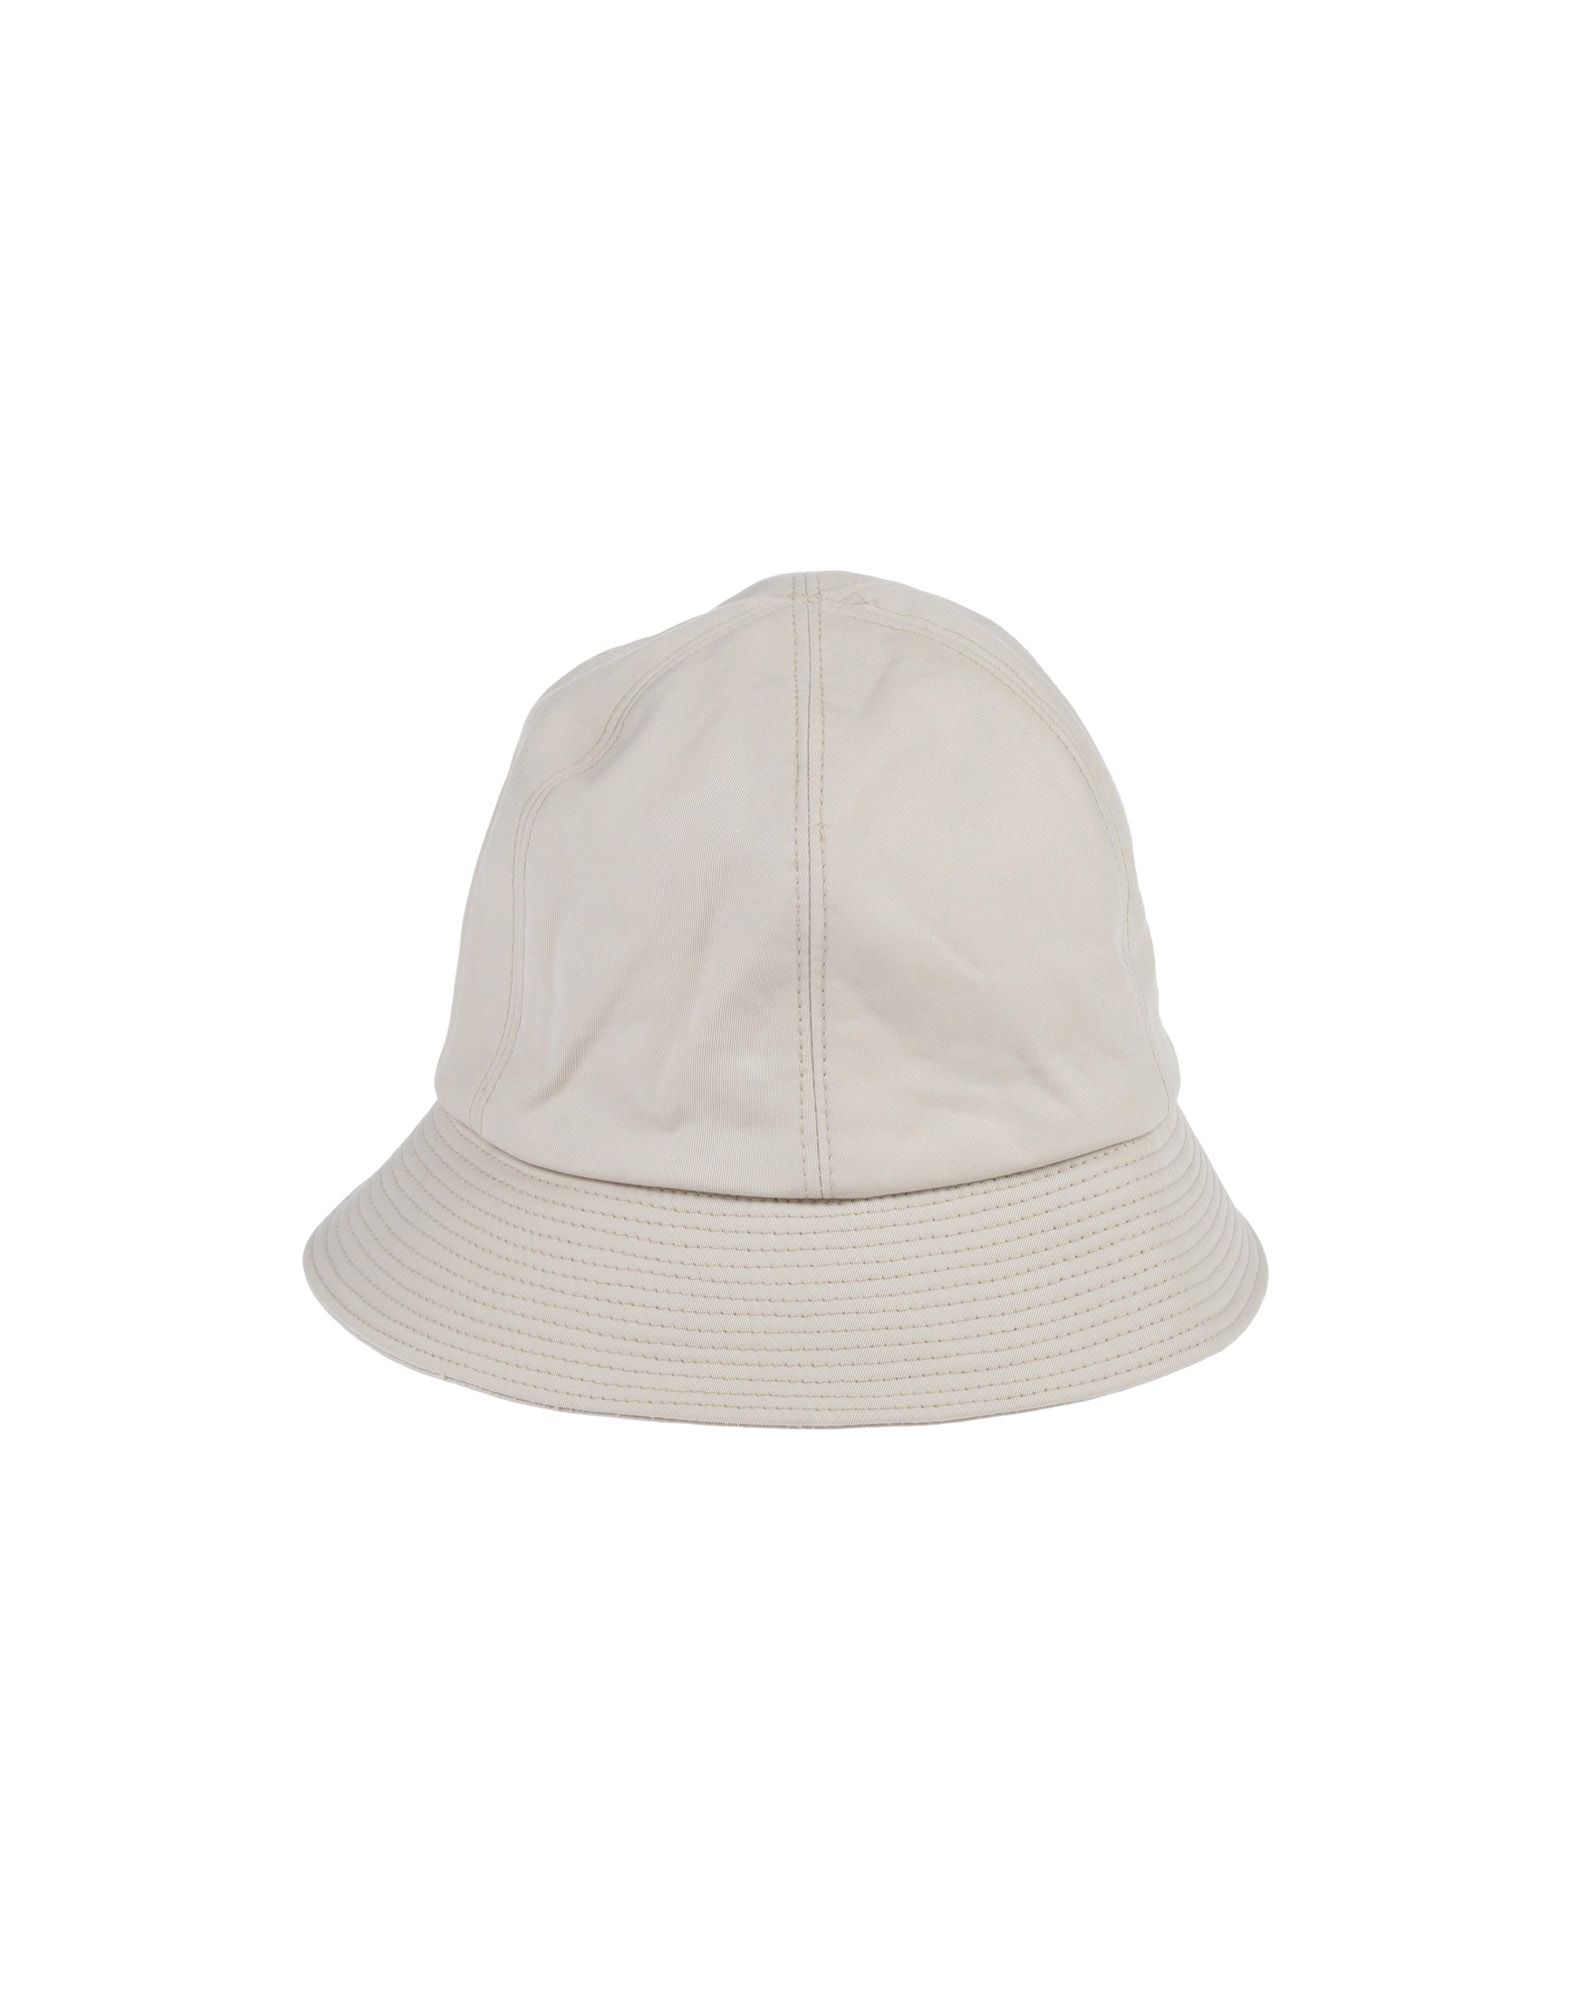 《送料無料》BURBERRY メンズ 帽子 ライトグレー 54 コットン 100%